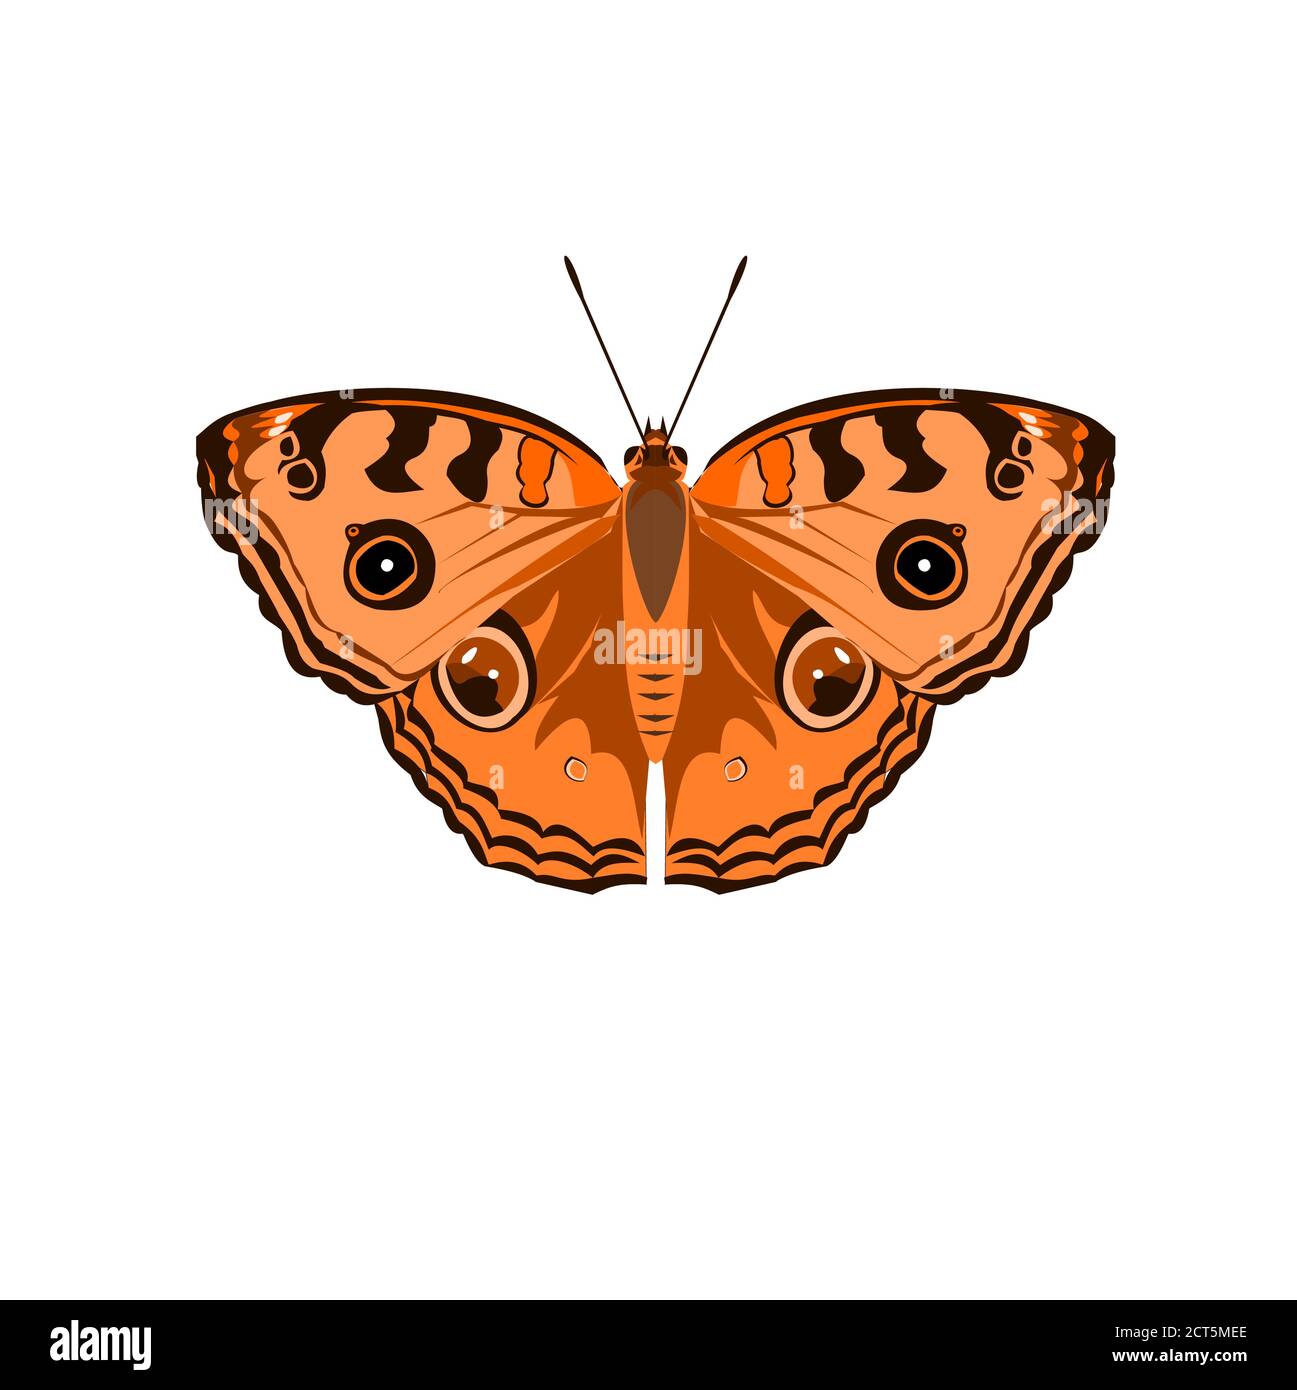 Der Pfau-Stiefmütterchen ( Junonia almana ) Schmetterling isoliert auf weißem Hintergrund, Muster ähnlich wie die Augen auf dem Flügel der orangen Farbe Insekt Stock Vektor